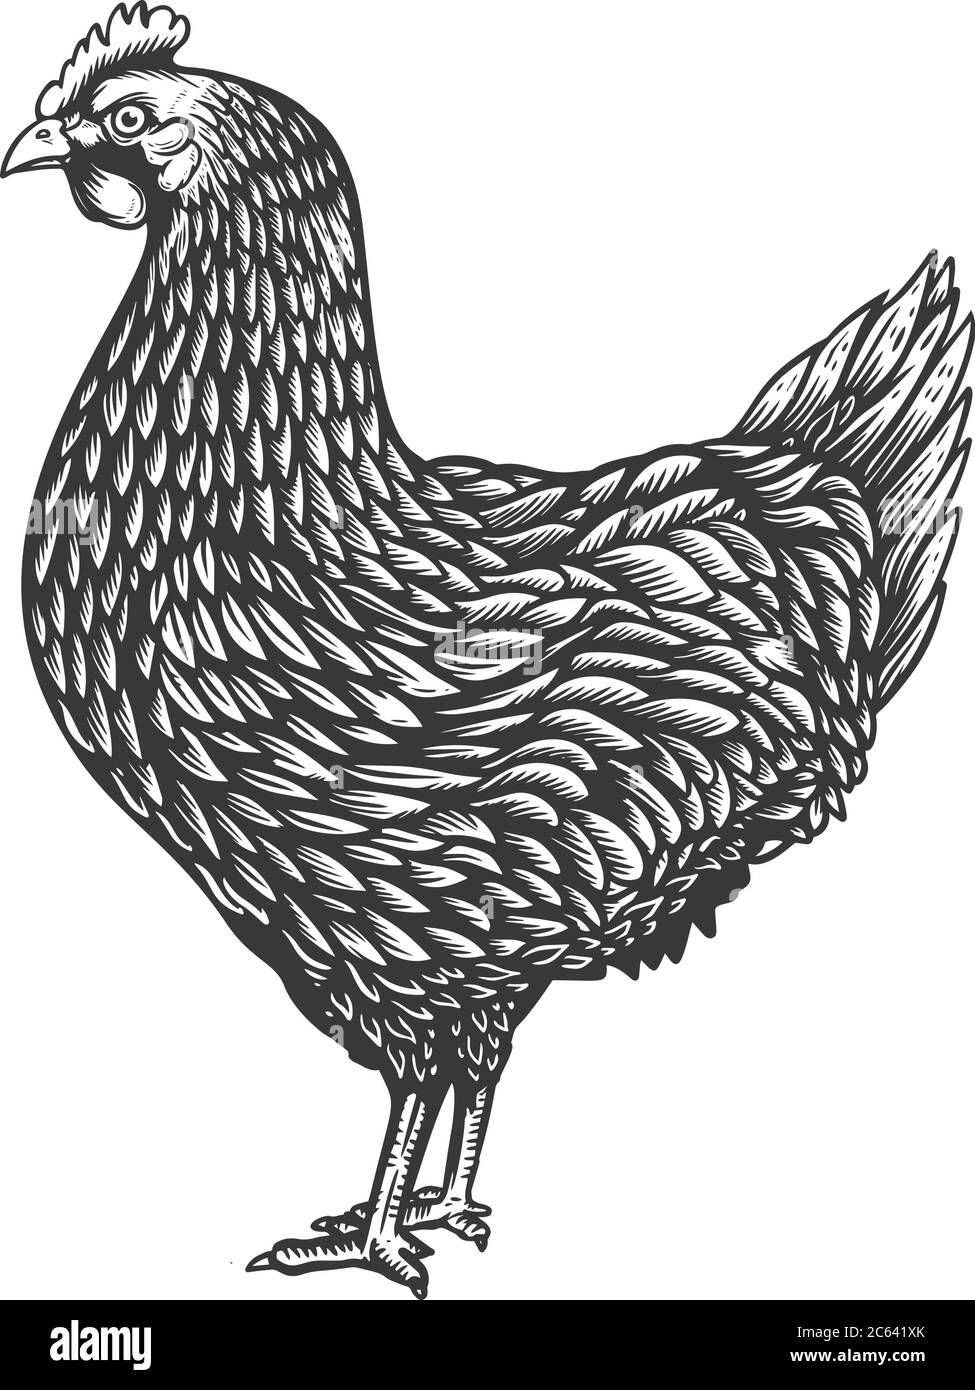 Illustrazione del pollo in stile di incisione. Elemento di progettazione per emblema, cartello, poster, cartoncino, banner, volantino. Illustrazione vettoriale Illustrazione Vettoriale